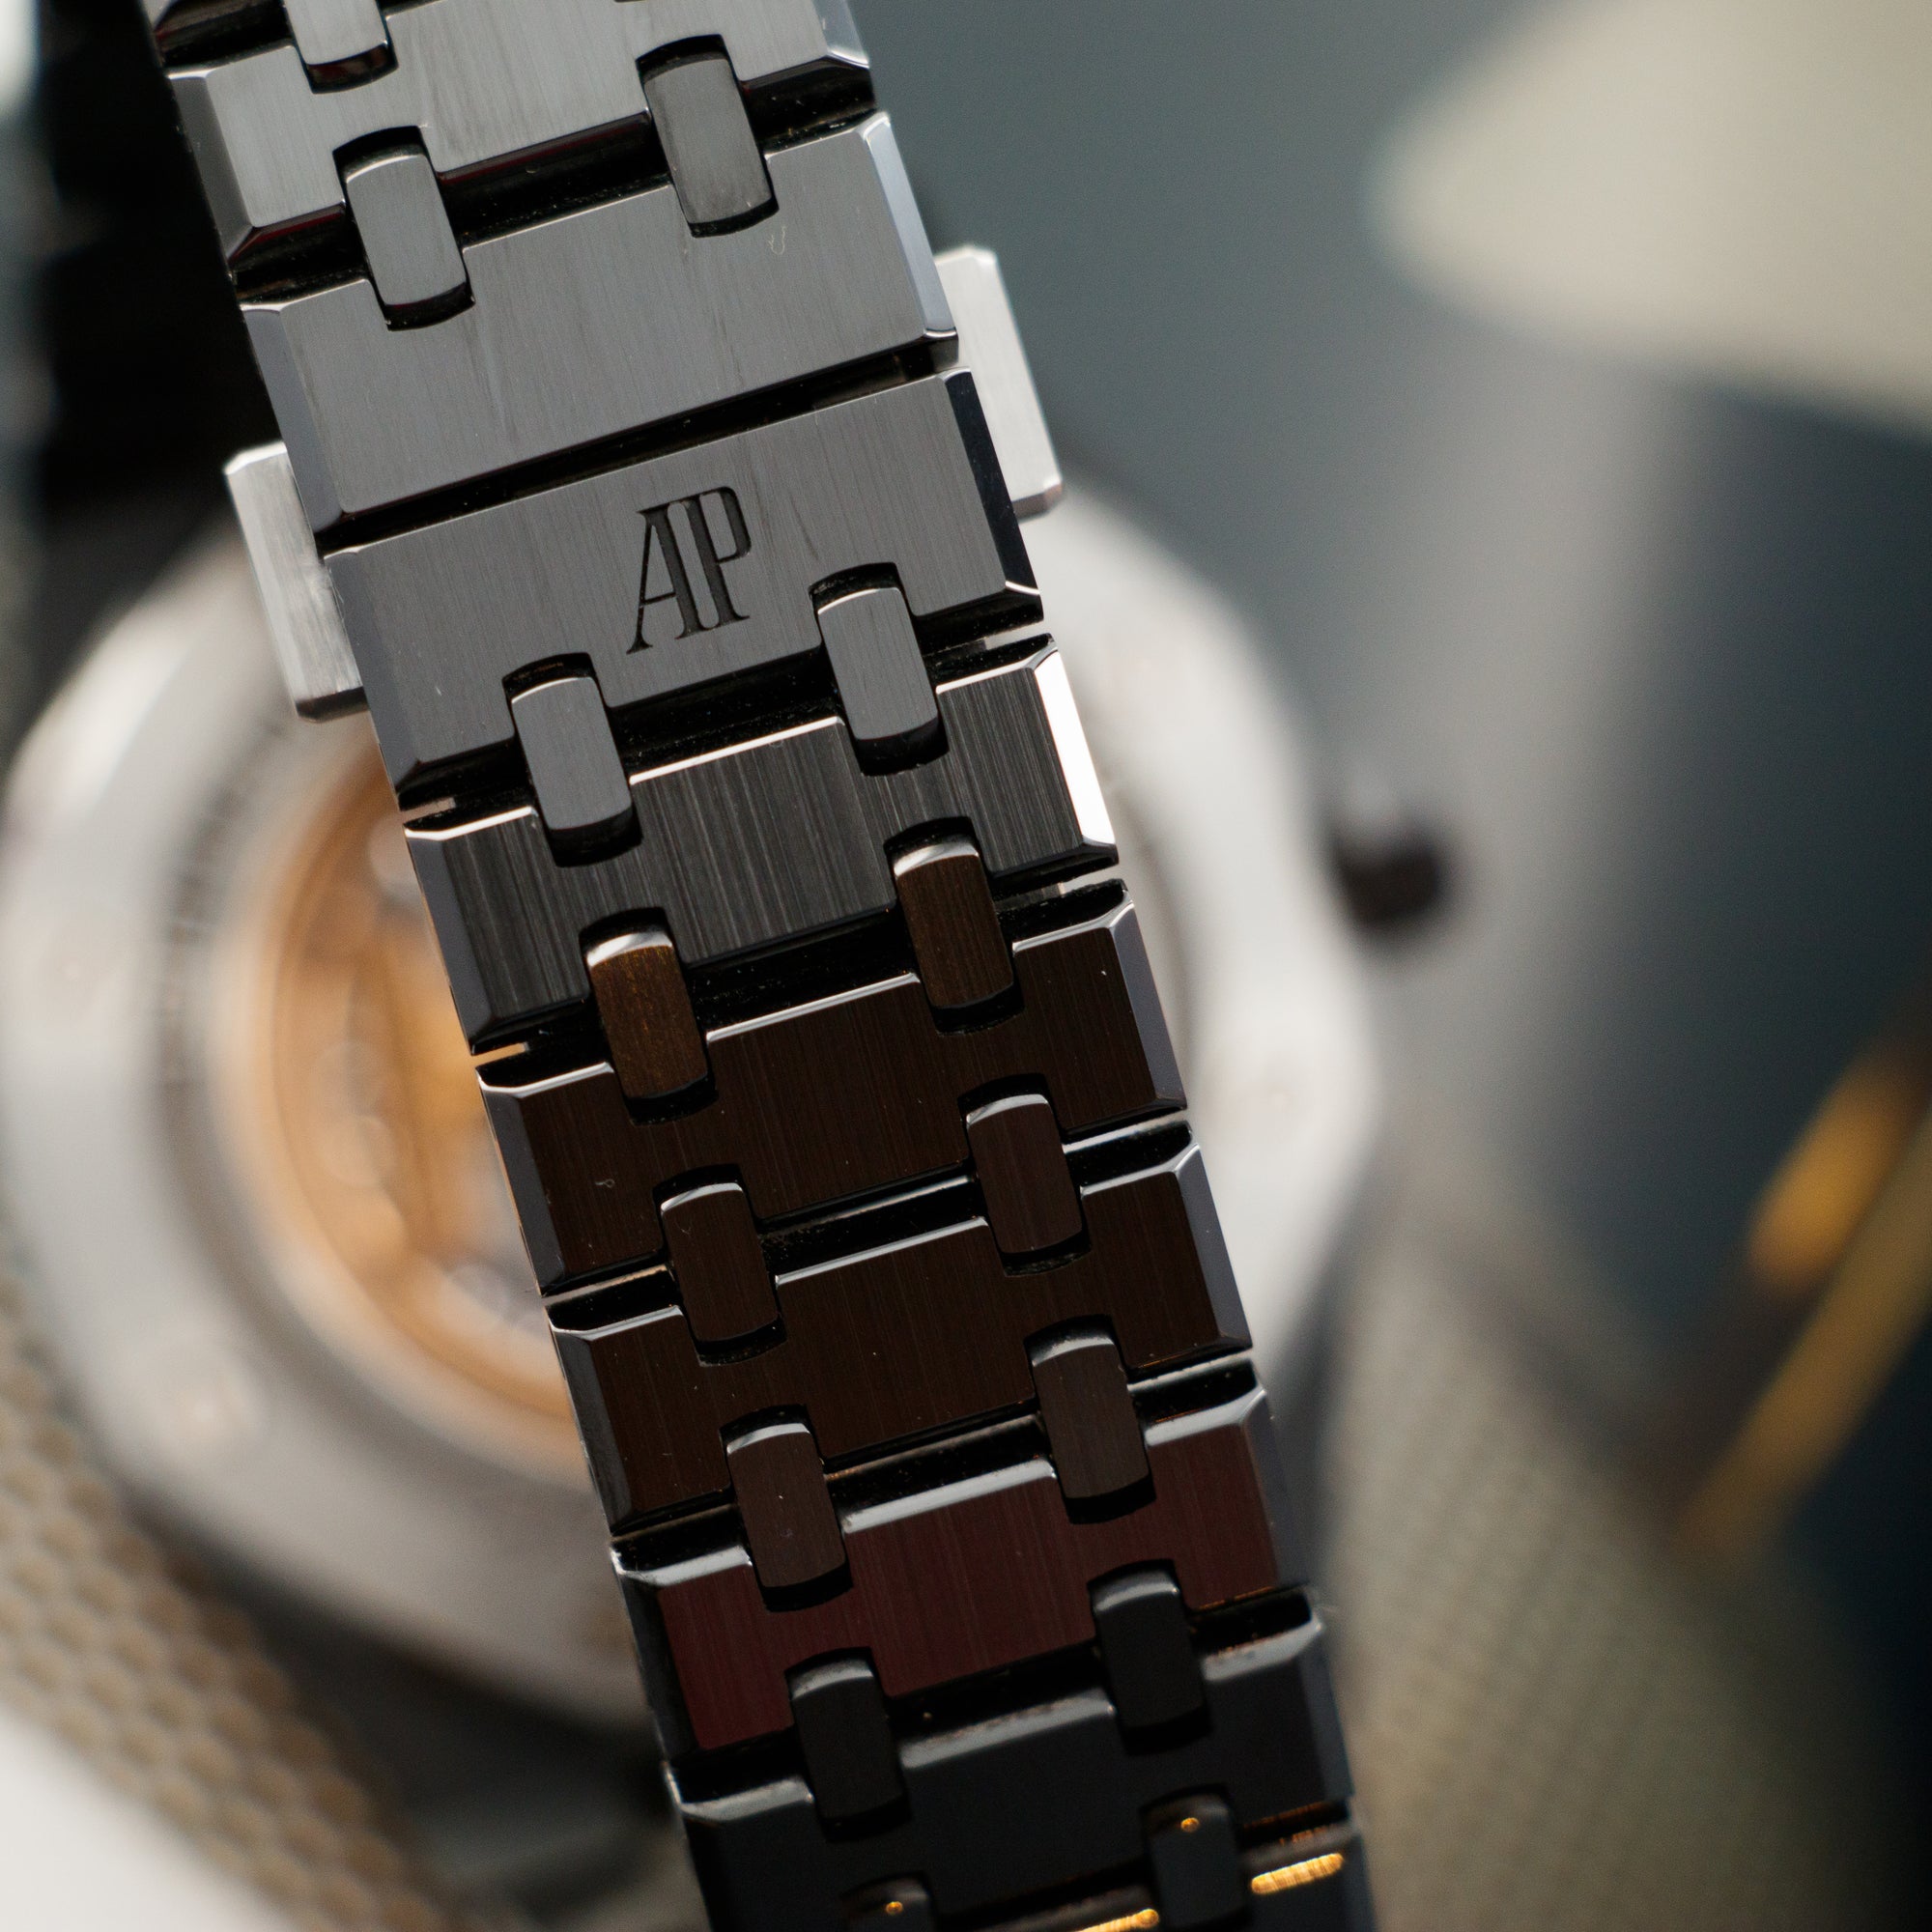 Audemars Piguet - Audemars Piguet Ceramic Royal Oak Perpetual Watch Ref. 26579CE - The Keystone Watches